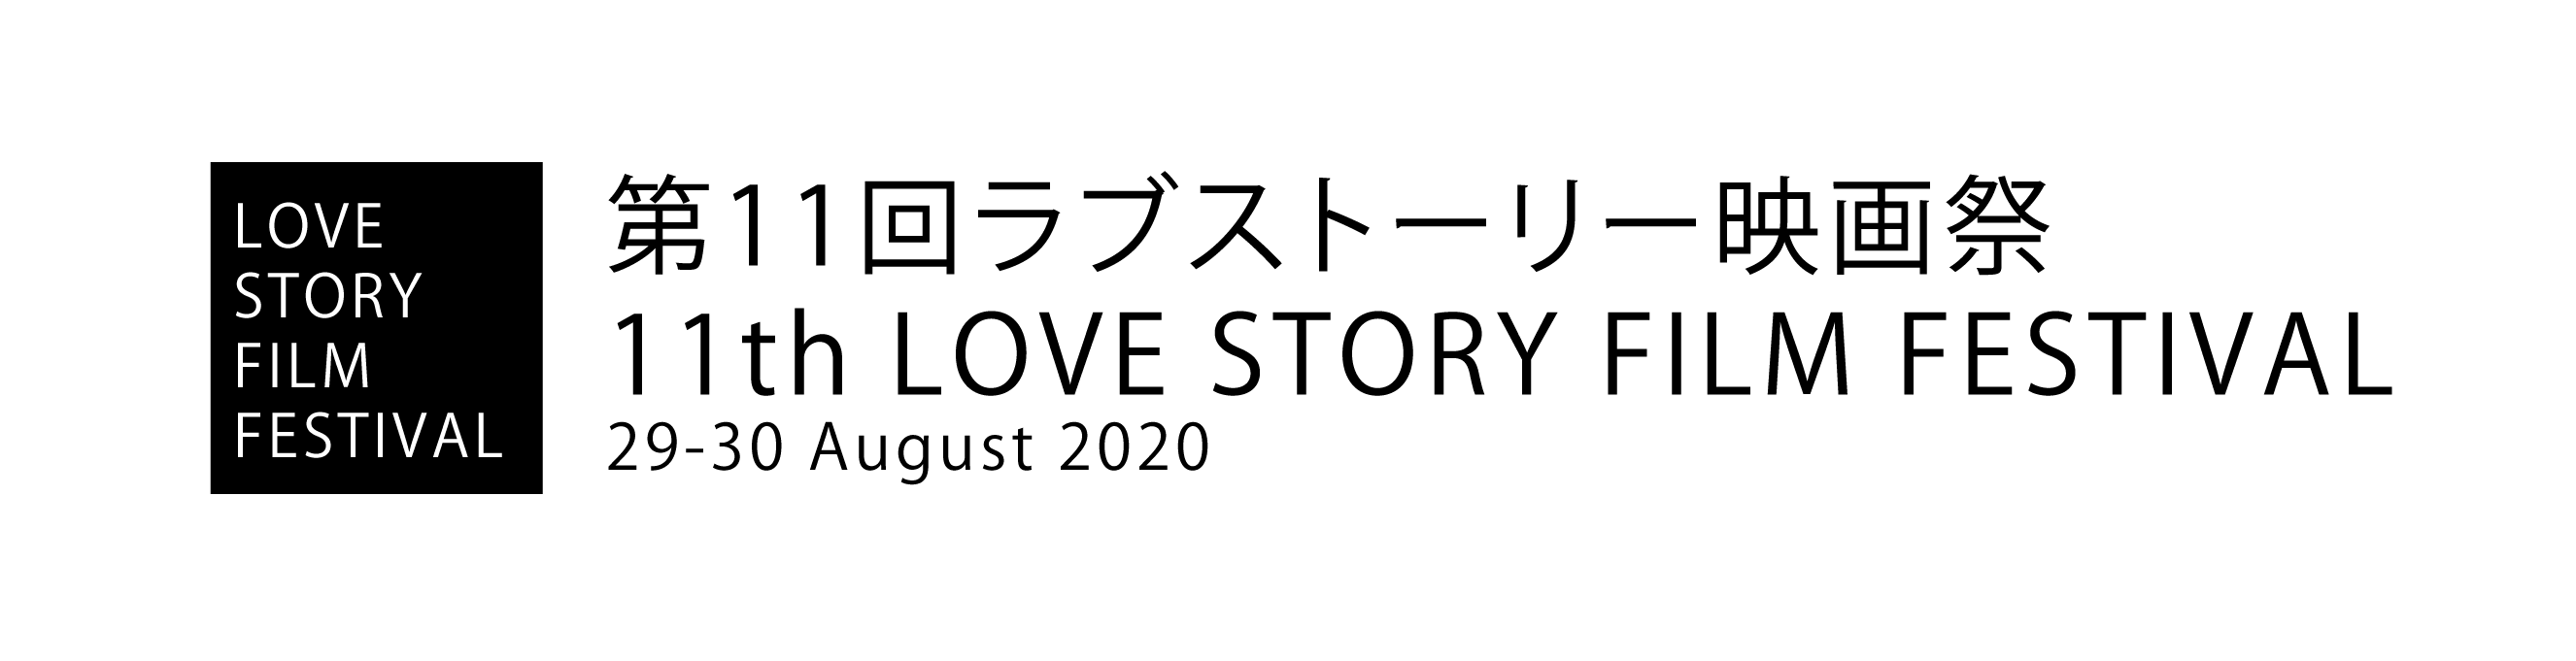 第11回ラブストーリー映画祭・11th LOVE STORY FILM FESTIVAL (2020)